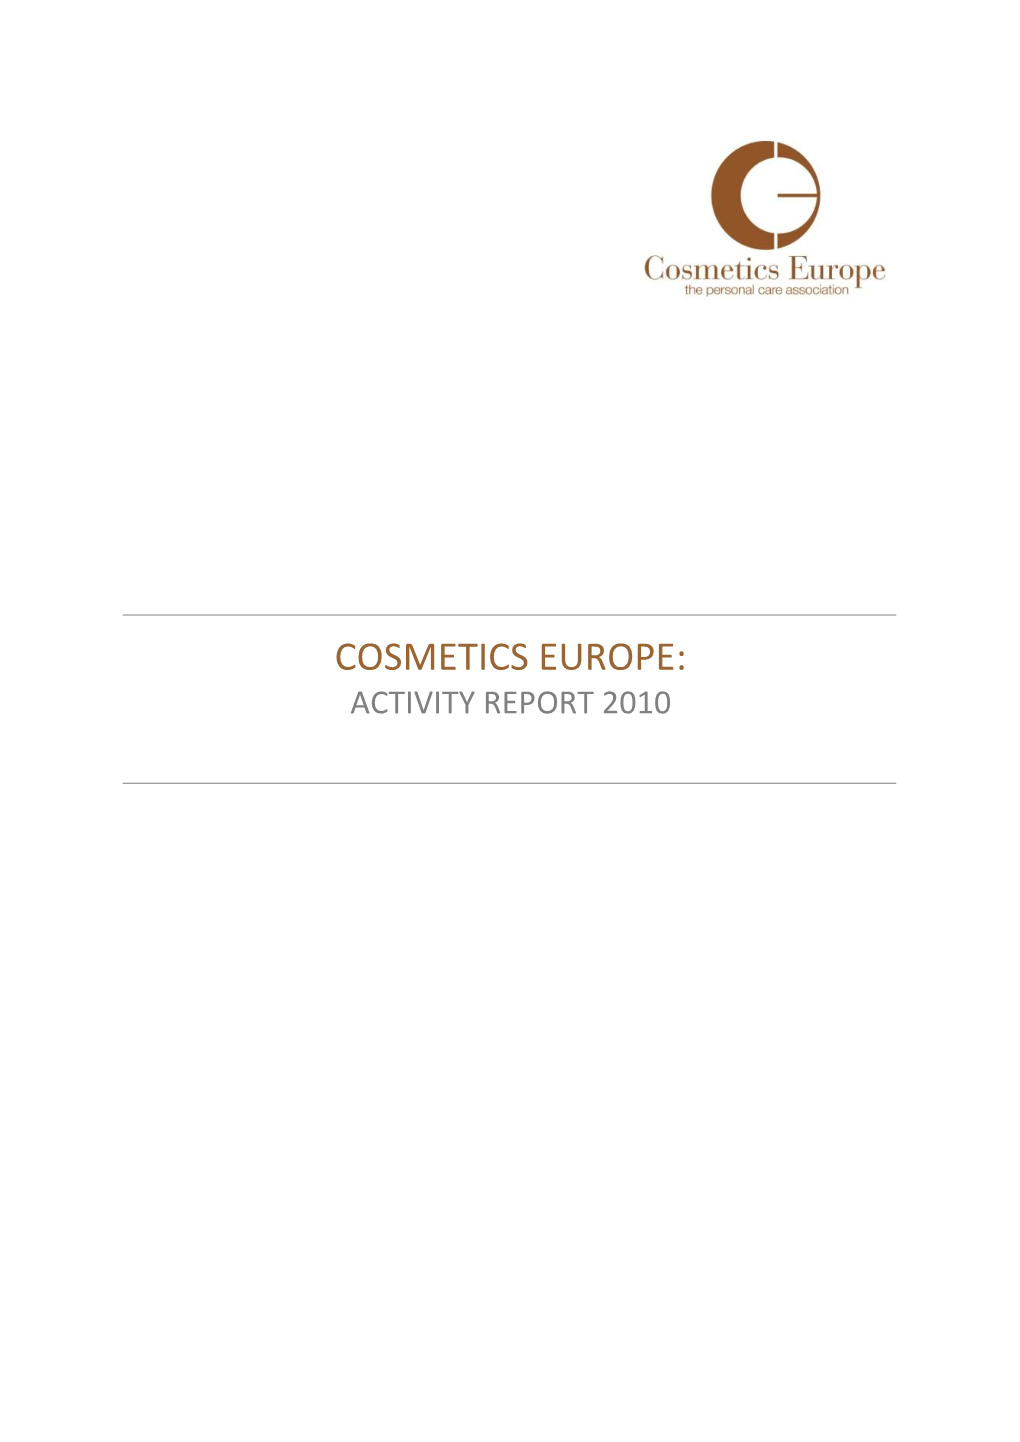 Cosmetics Europe: Activity Report 2010